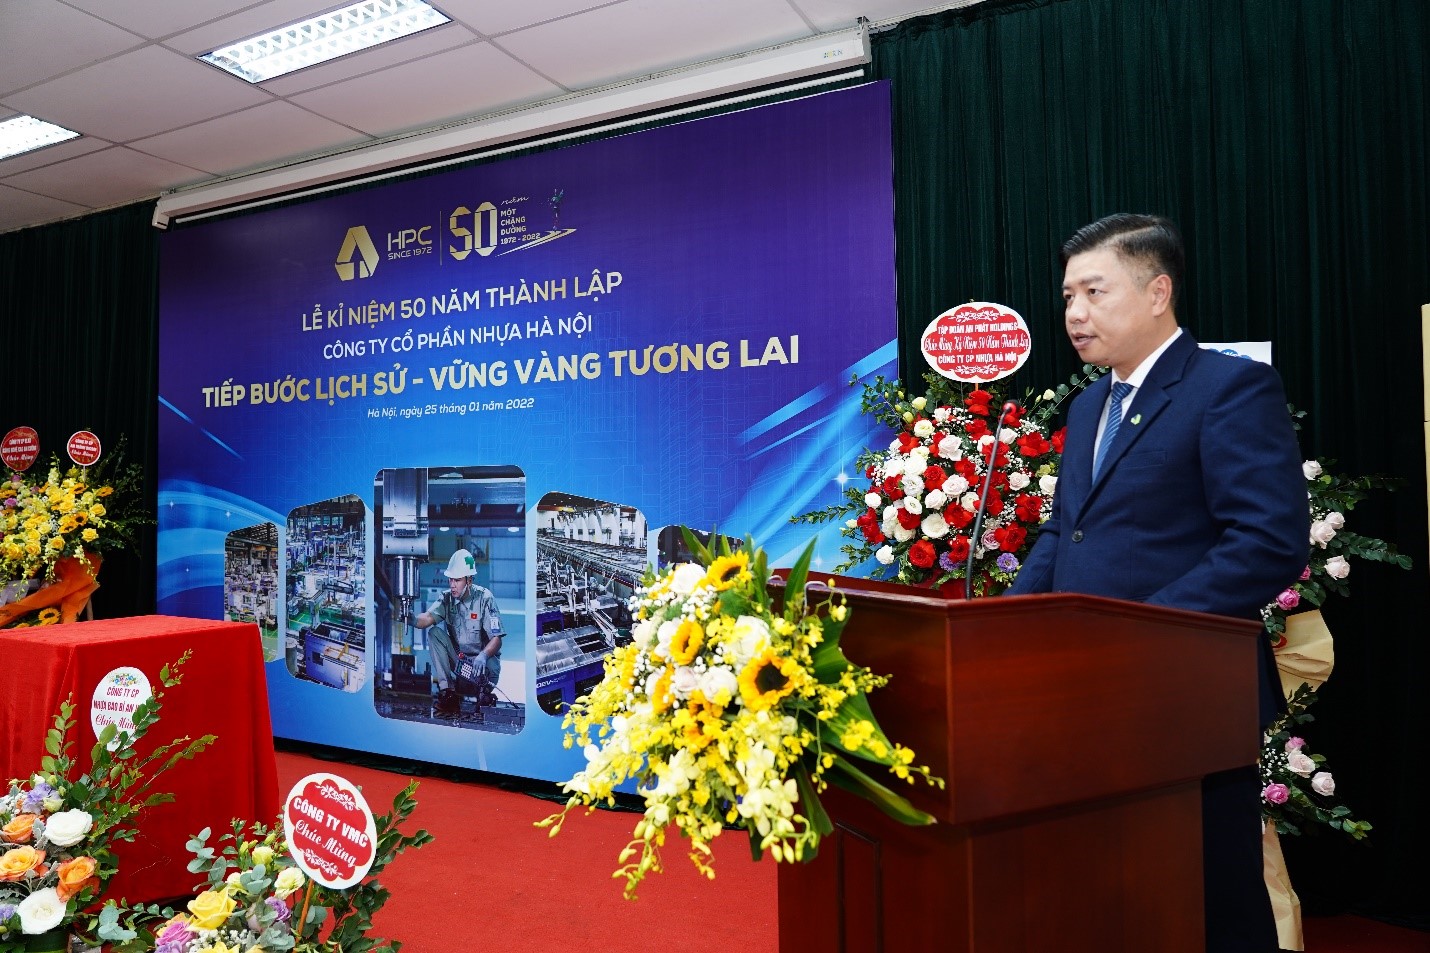 Ông Bùi Minh Hải - Chủ tịch Công ty CP Nhựa Hà Nội phát biểu chào mừng tại Lễ kỉ niệm 50 năm thành lập Công ty